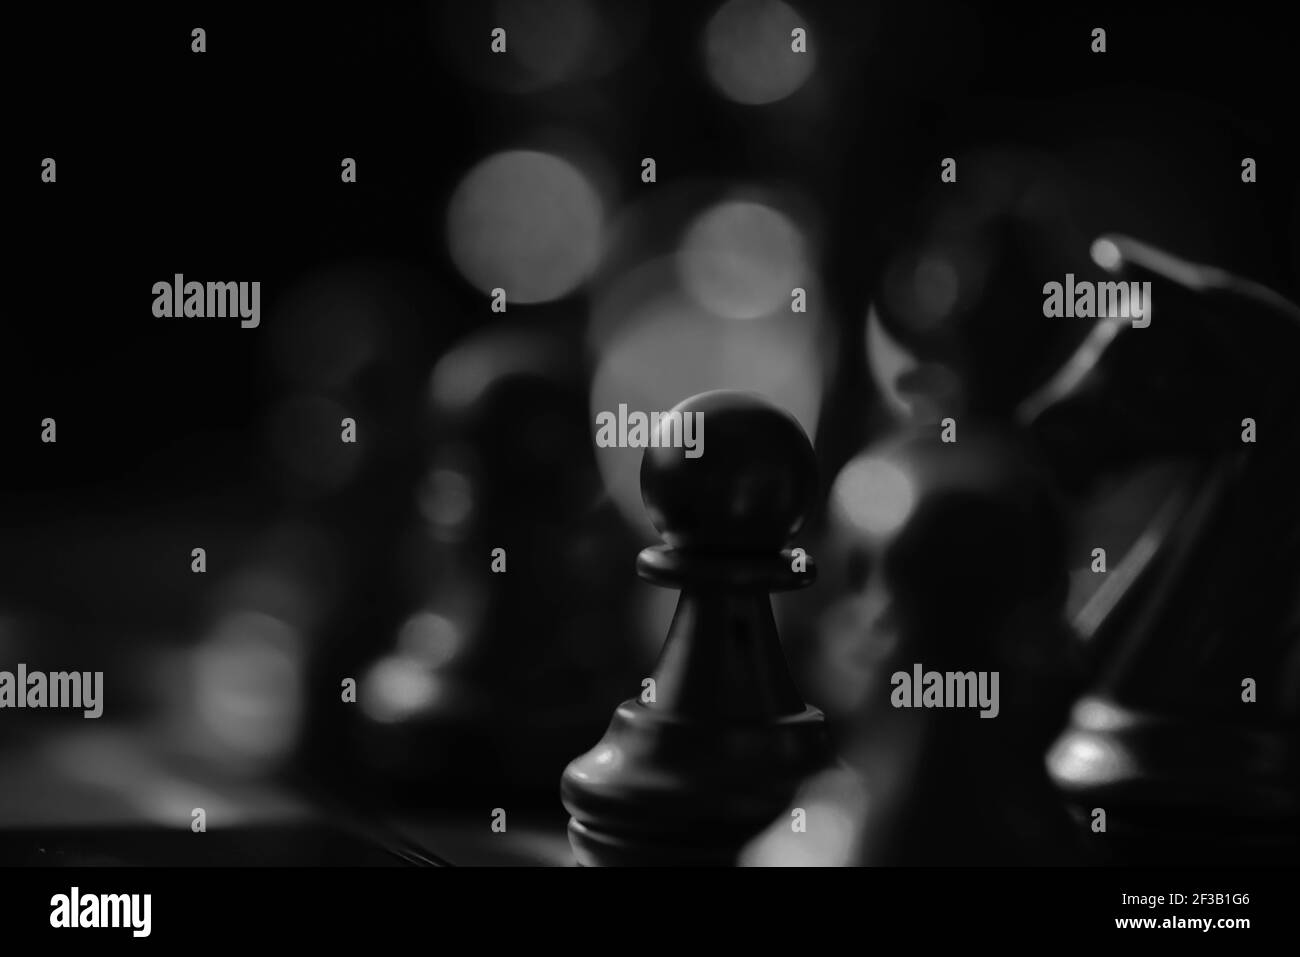 jeu d'affaires stratégie concurrentielle avec jeu de plateau d'échecs avec flou arrière-plan Banque D'Images